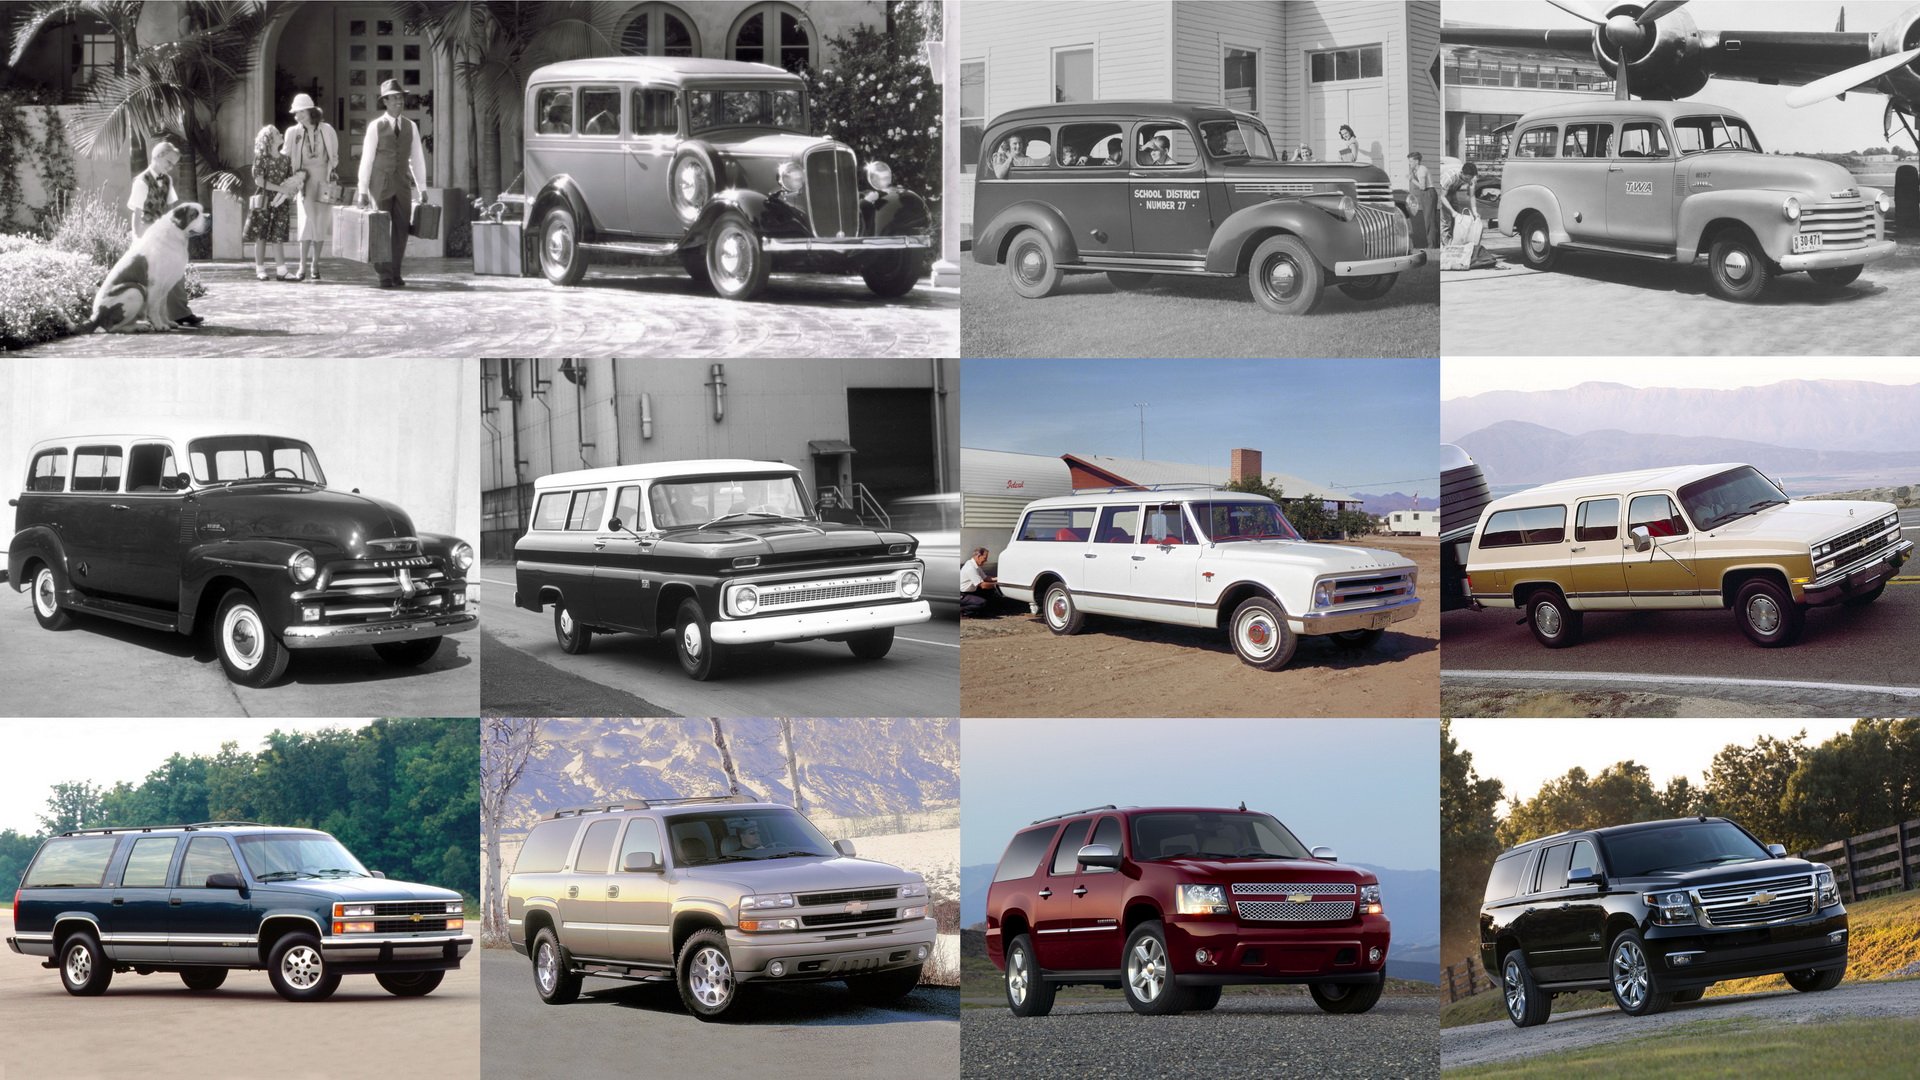 شيفروليه سوبربان تحتفل بمرور 85 عاماً وكونها أقدم موديل في تاريخ السيارات 85